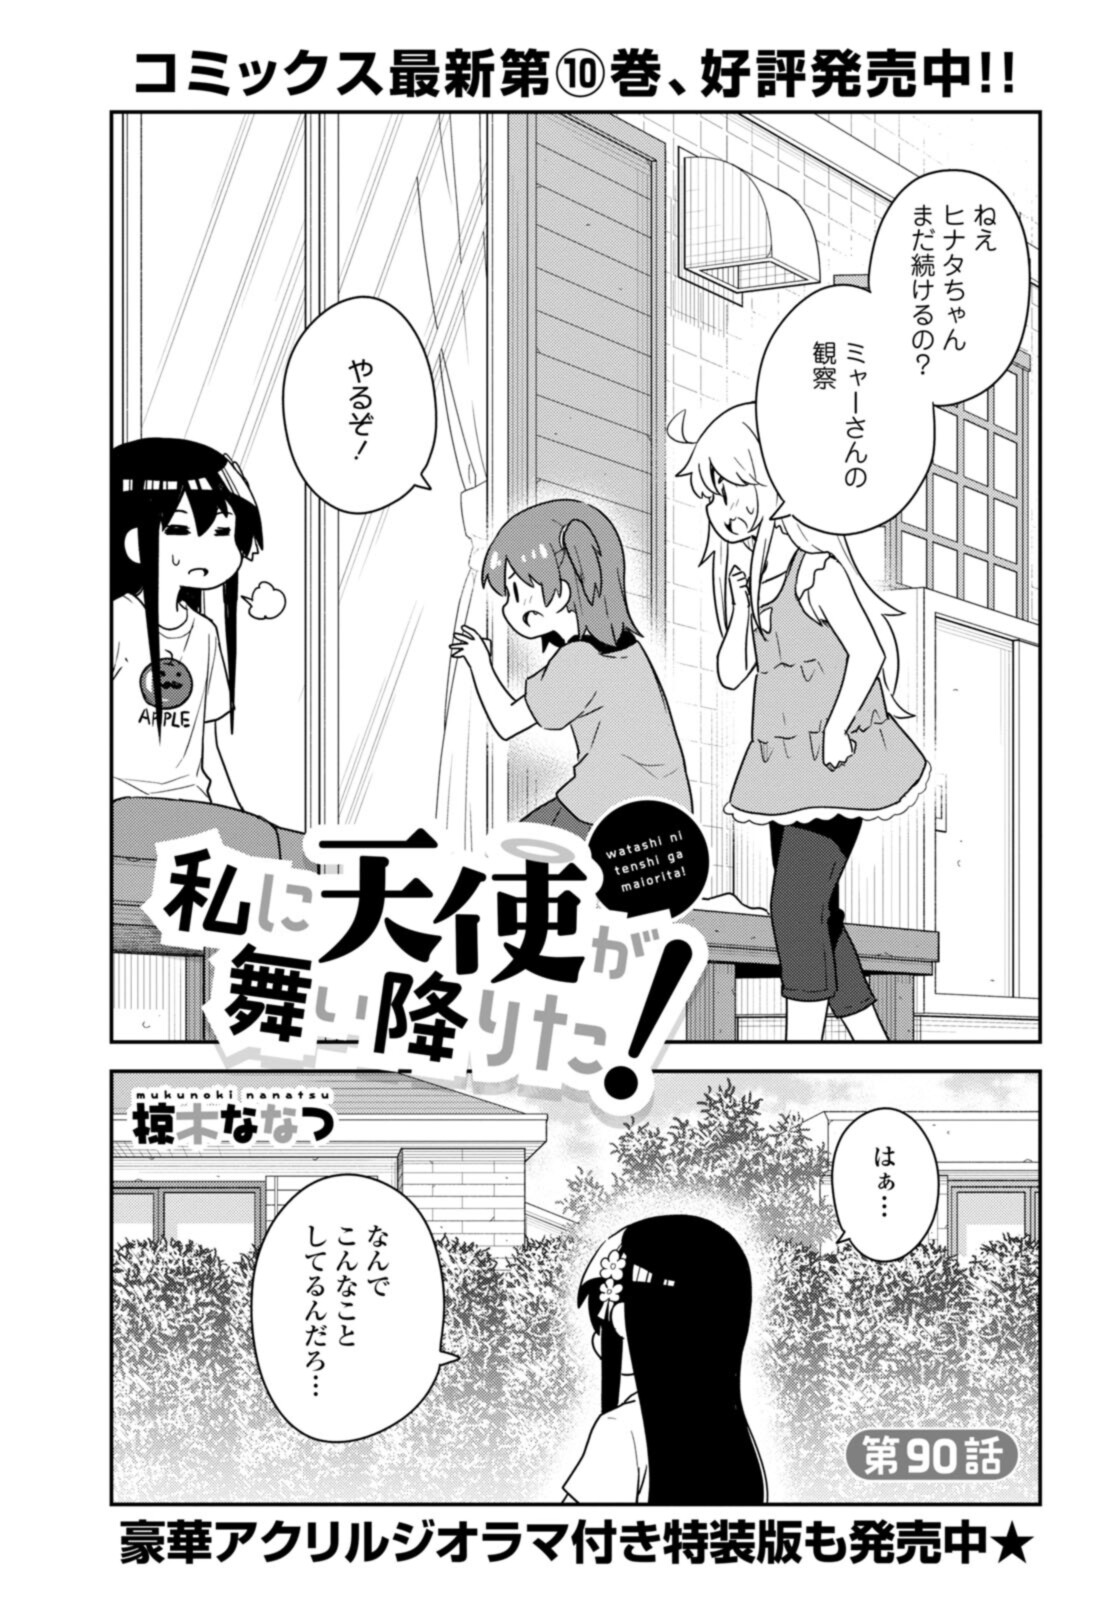 Watashi ni Tenshi ga Maiorita! - Chapter 90 - Page 2